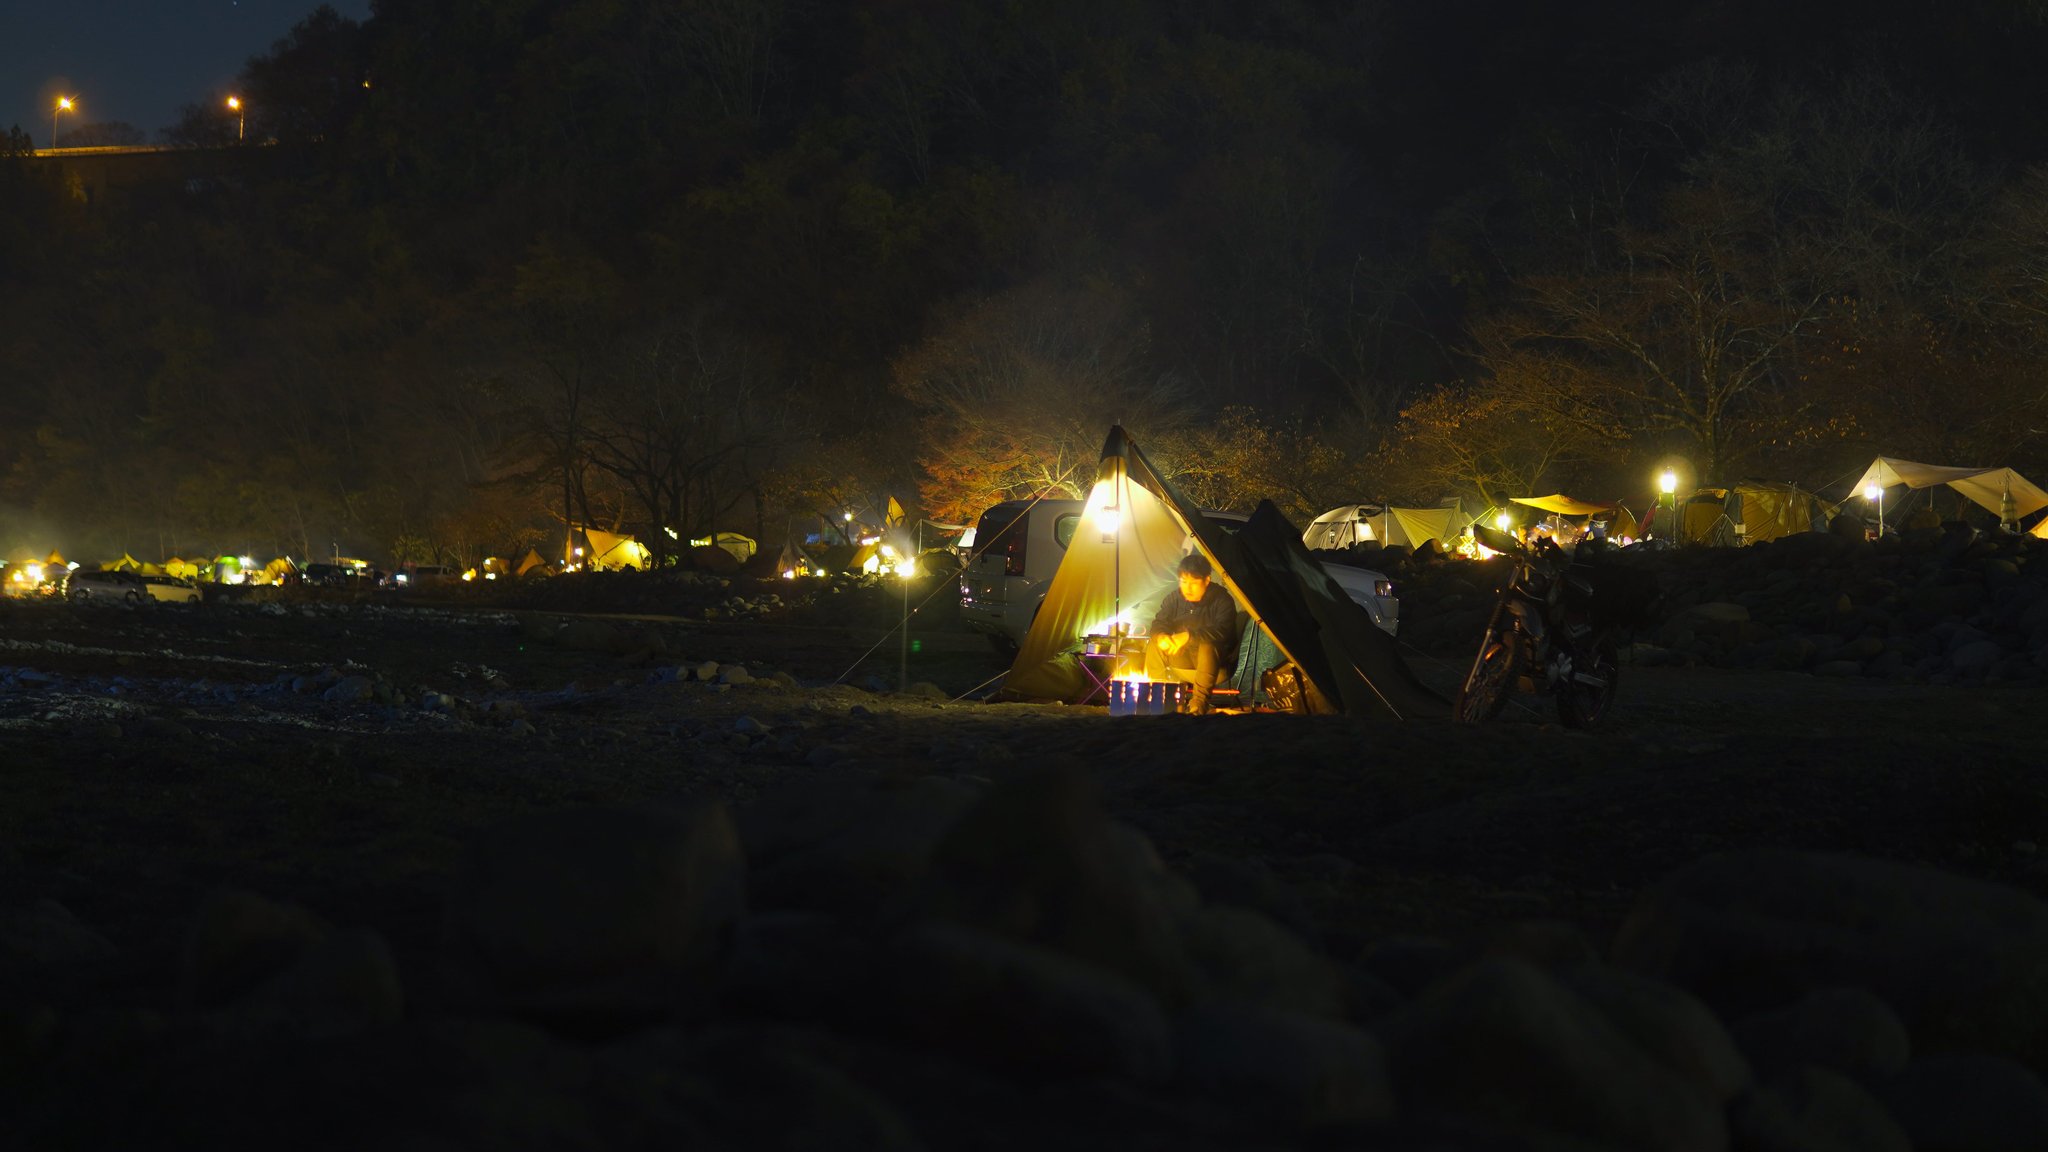 あかまんキャンプ ソロキャンプツーリング 青野原オートキャンプ場 の夜 昼は混雑していたテント達が 夜には一転素敵な夜景に 寝るときは つま先が寒かったです ソロキャンプ キャンプツーリング ソロキャンプツーリング 夜景 キャンプ好きな